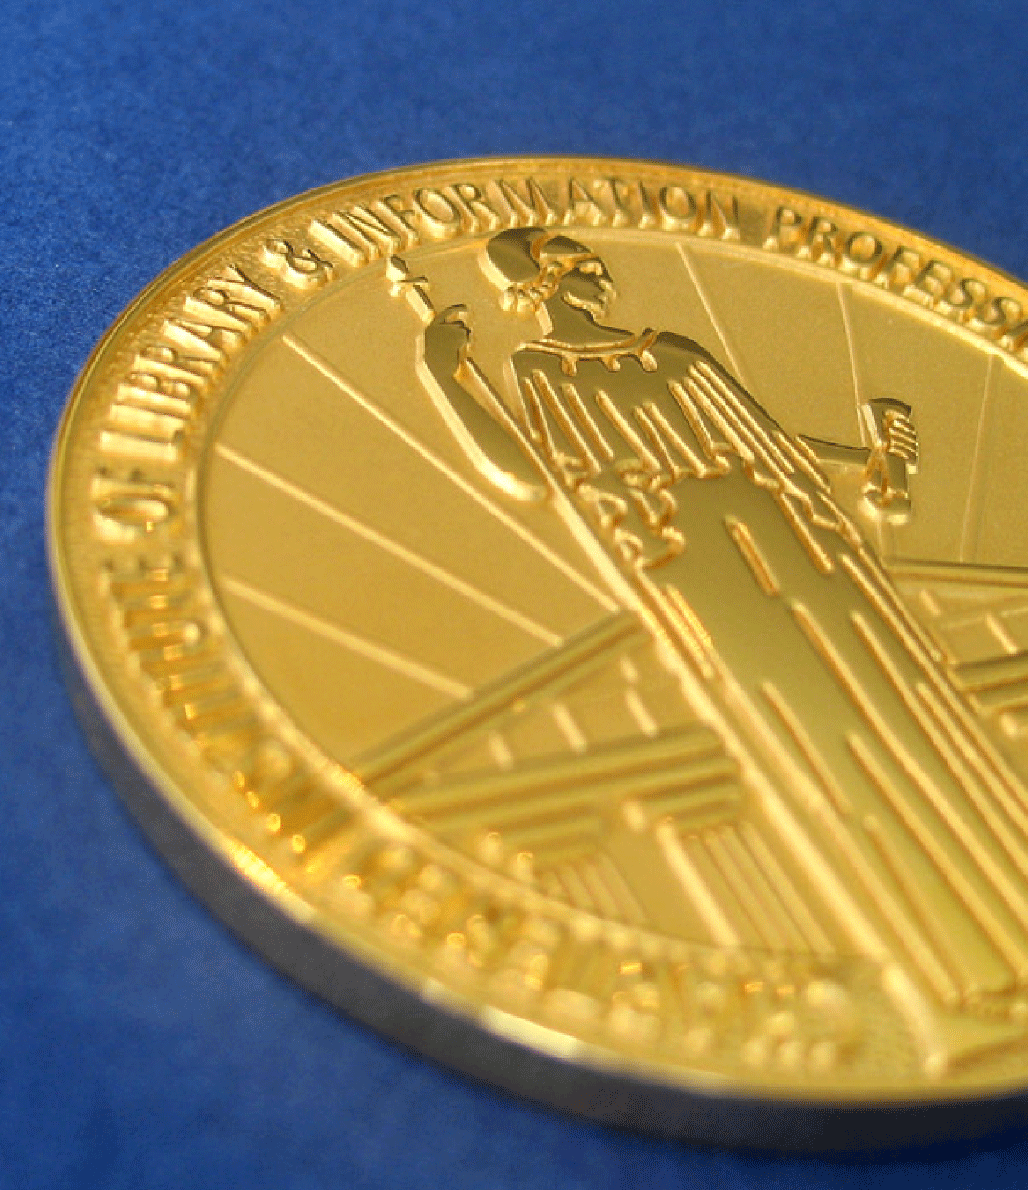 Carnegie Medal Goes to Acevedo, Morris Receives Greenaway Medal File 770